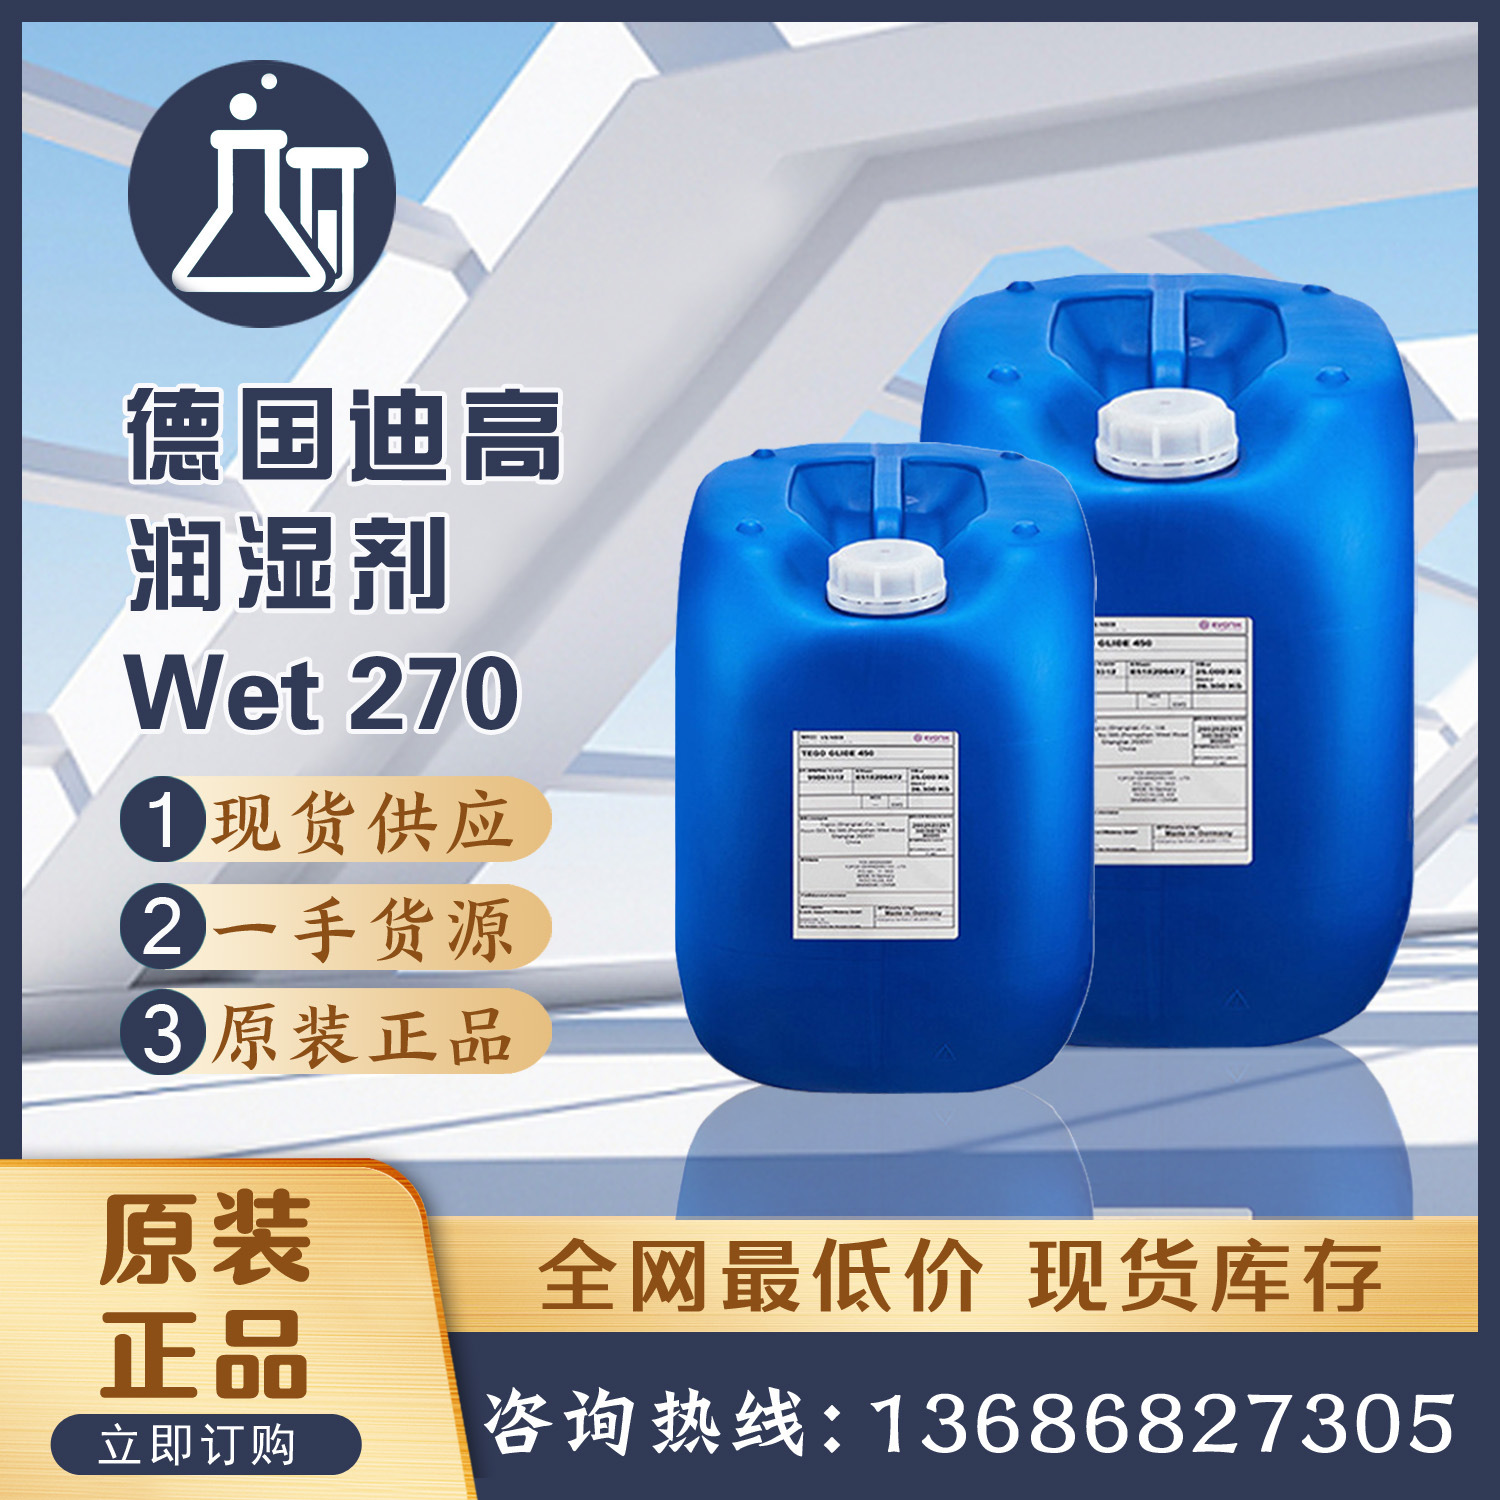 迪高TEGO Wet270润湿剂 聚氨酯丙烯酸树脂工业建筑汽车涂料润湿剂